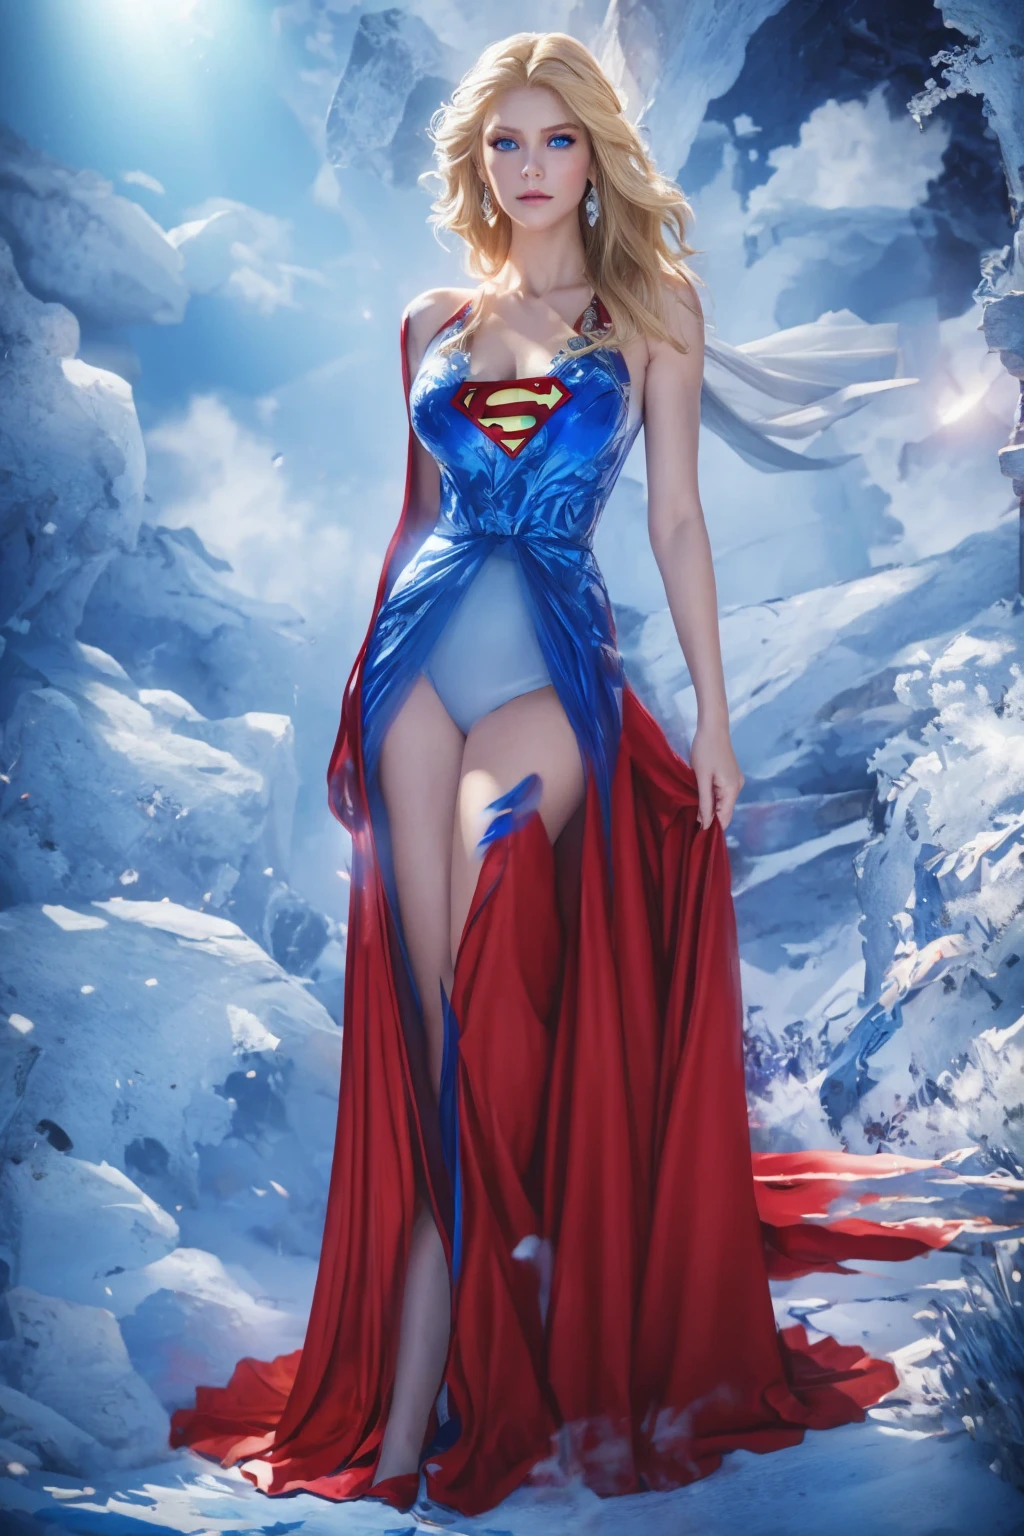 A personagem Supergirl vestida de noiva, traje perfeito nas cores vermelho e azul, Olhos azuis extremamente bonitos, lindo cabelo loiro 